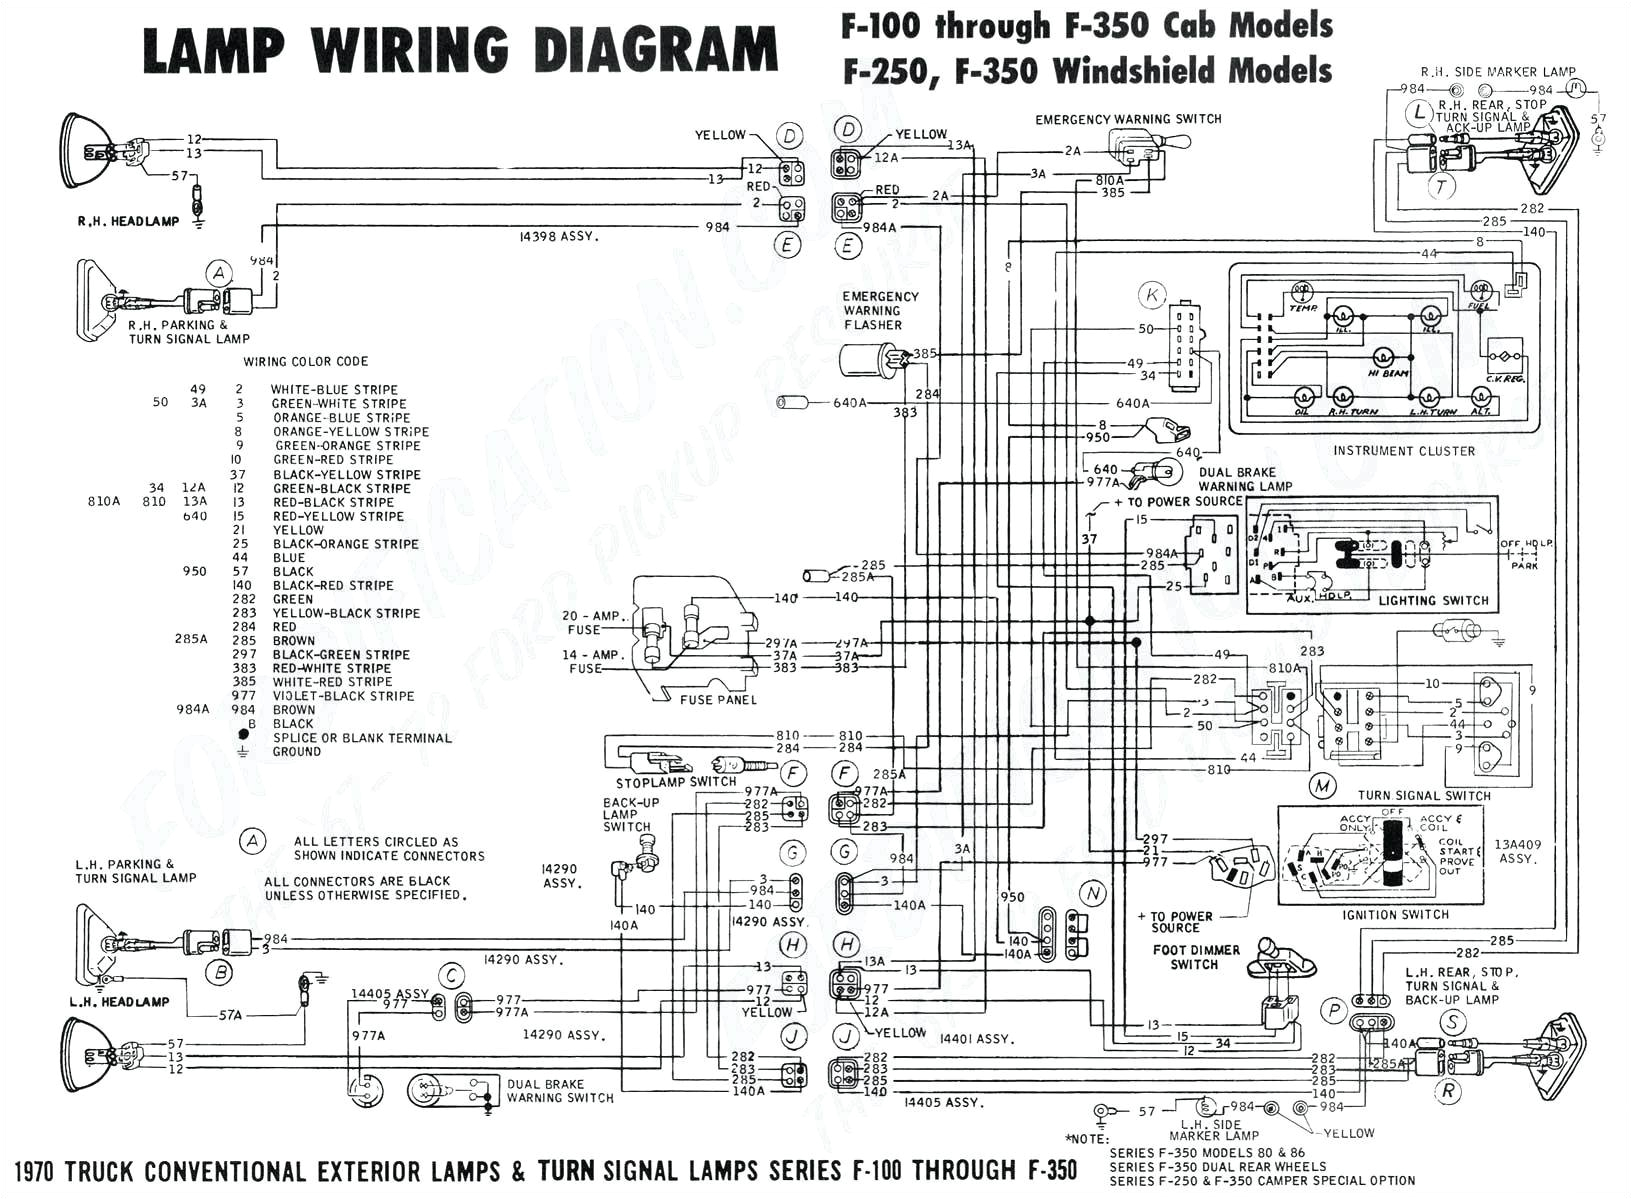 pump wiring diagram free picture schematic data diagram schematic pump wiring diagram free picture schematic